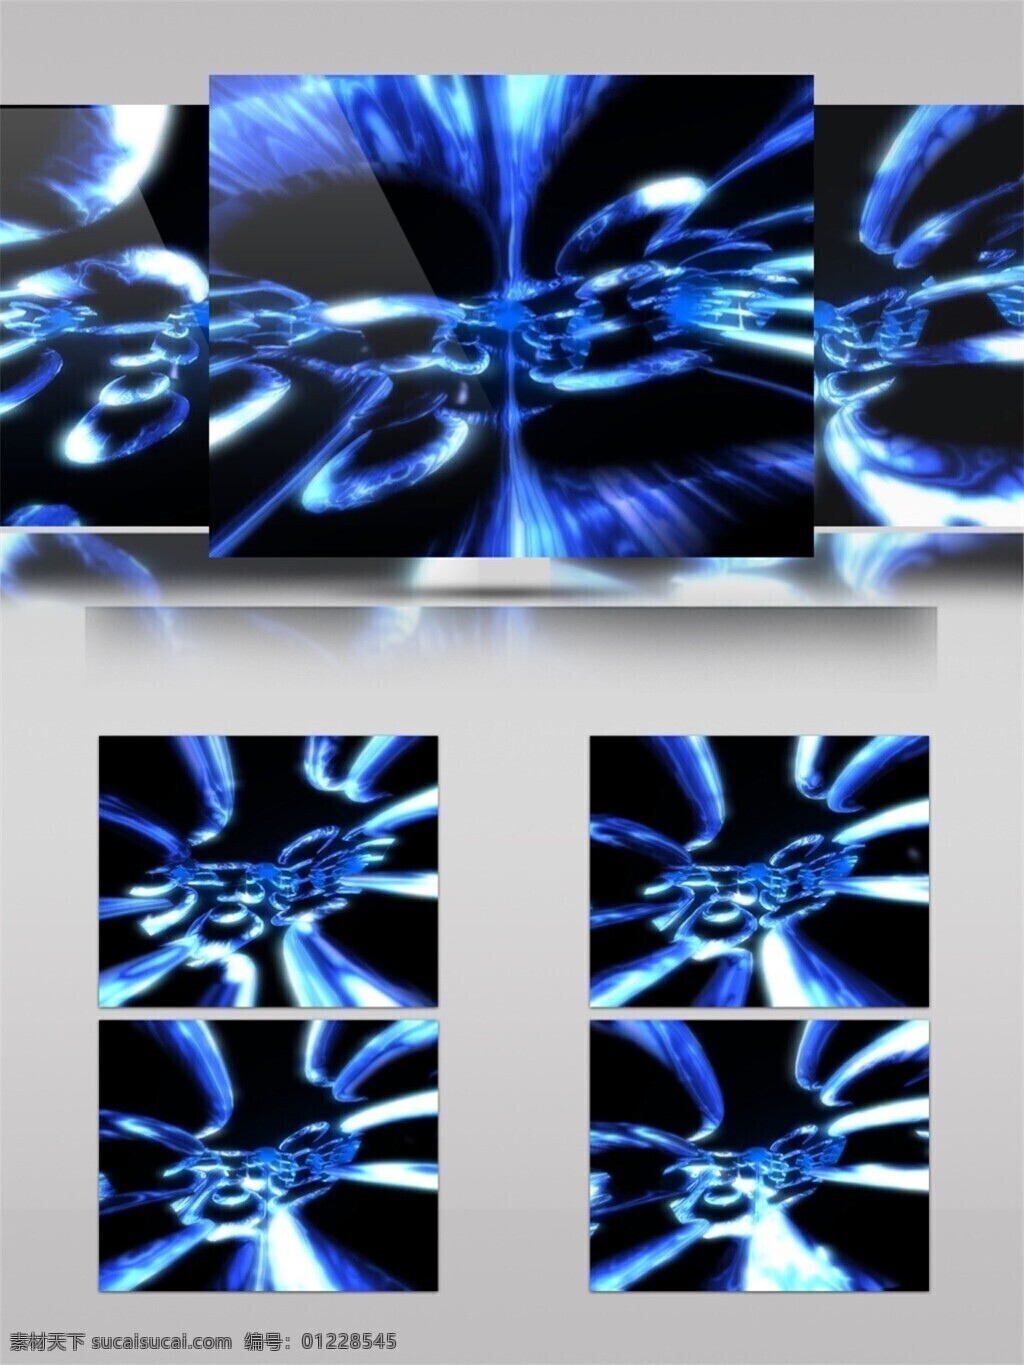 光斑散射 光束 蓝色 视觉享受 手机壁纸 星际 迷幻 光雾 视频